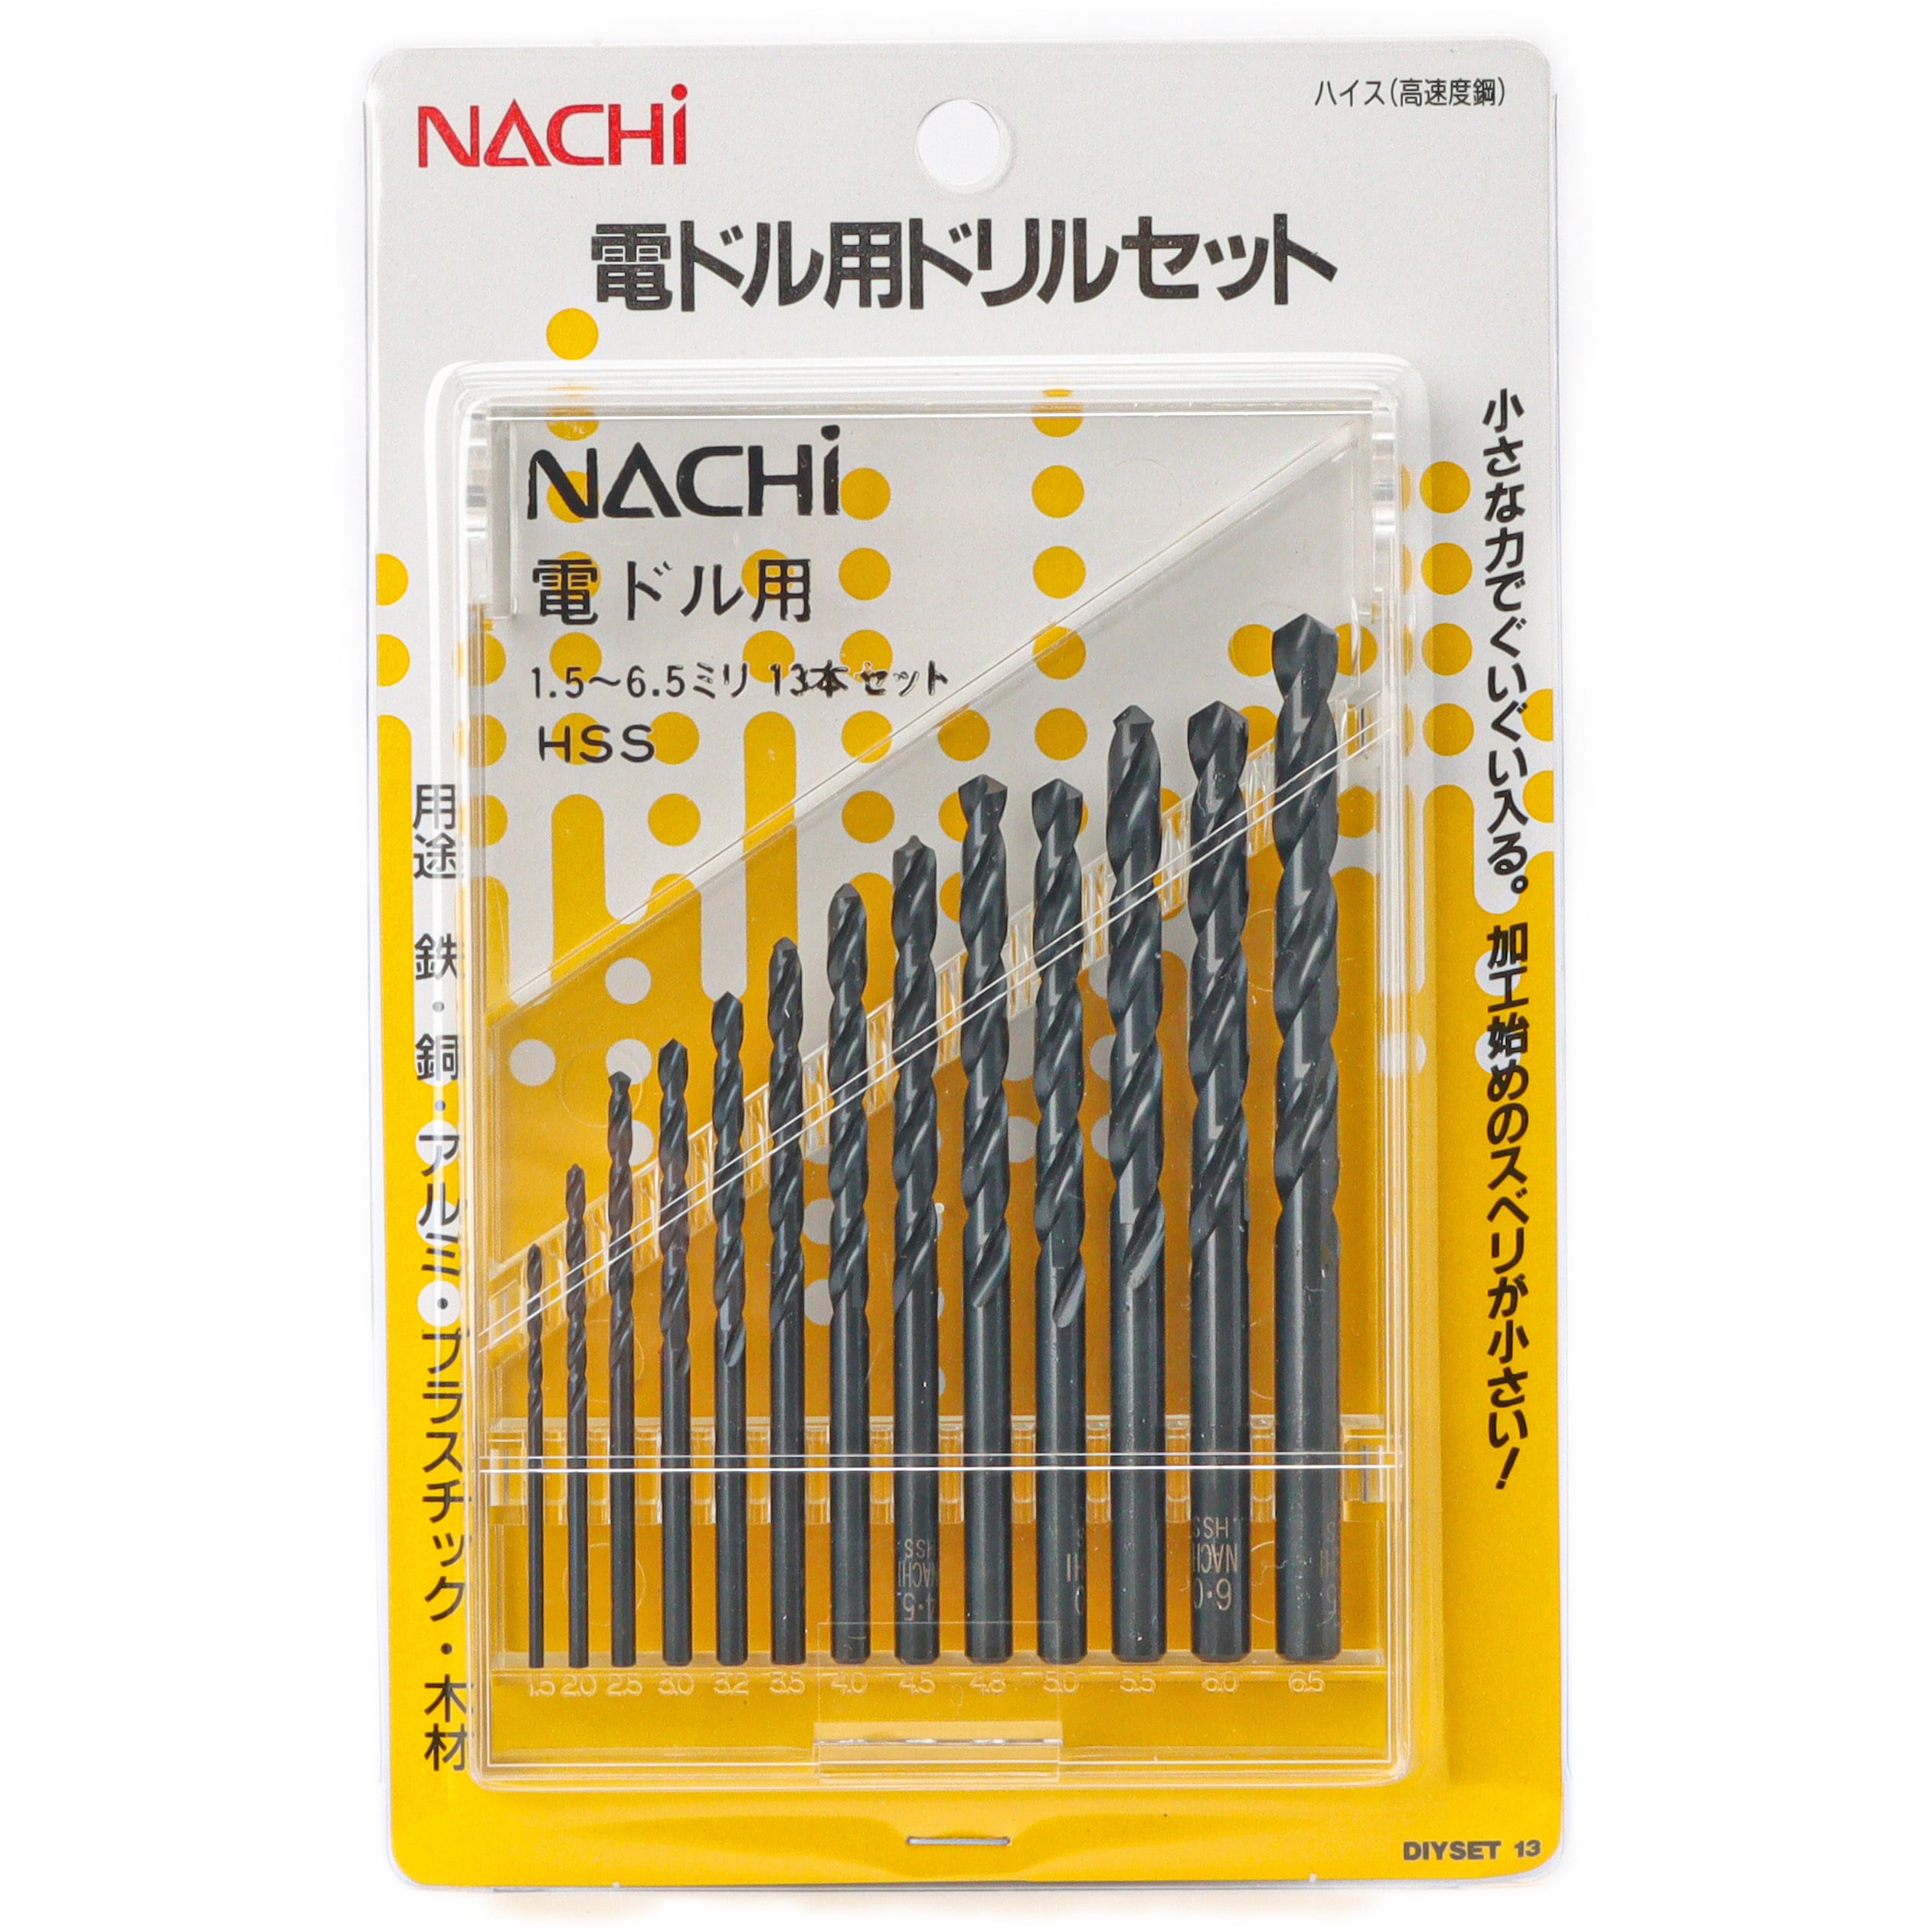 NACHi(ナチ) 超硬ドリル アクアドリルハード AQDH 11mm 切削、切断、穴あけ